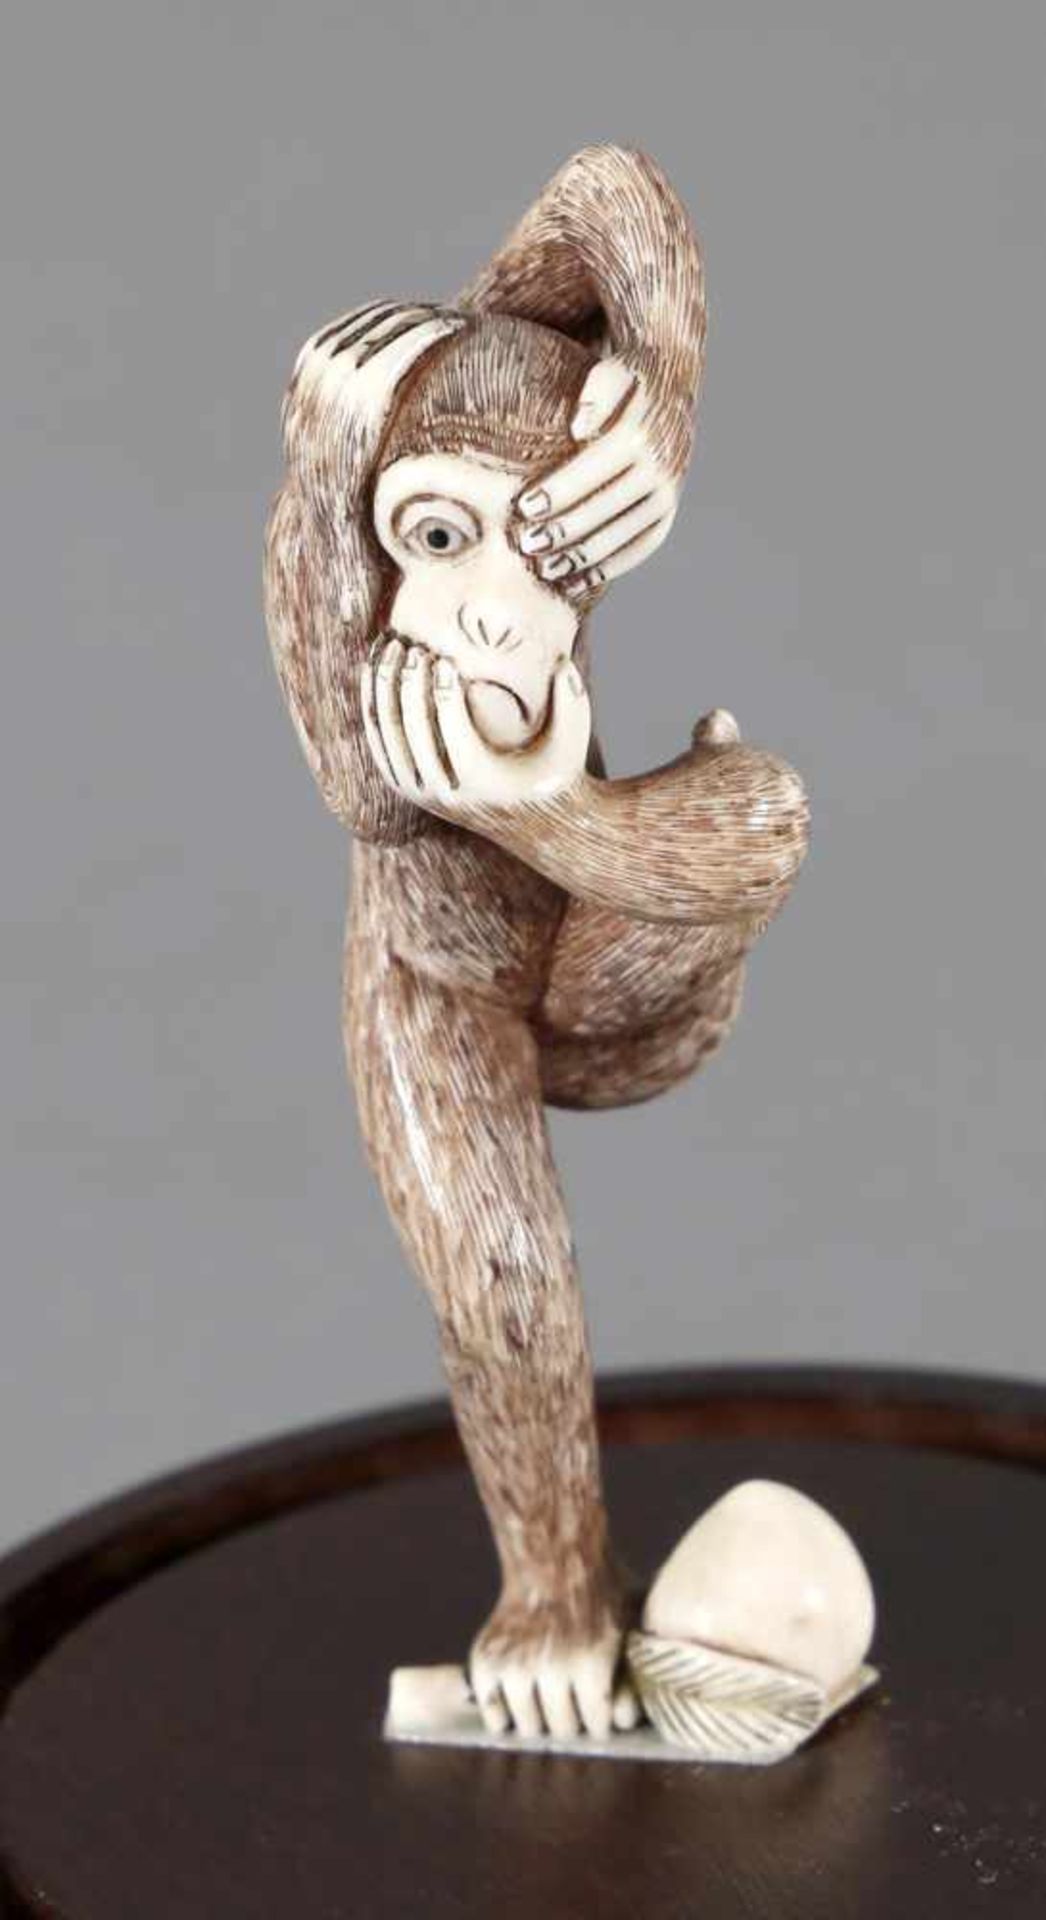 Netsuke eines Affen aus Elfenbein auf Holzsockel, 1. H. 20. Jh.in akrobatischer Übung führt der Affe